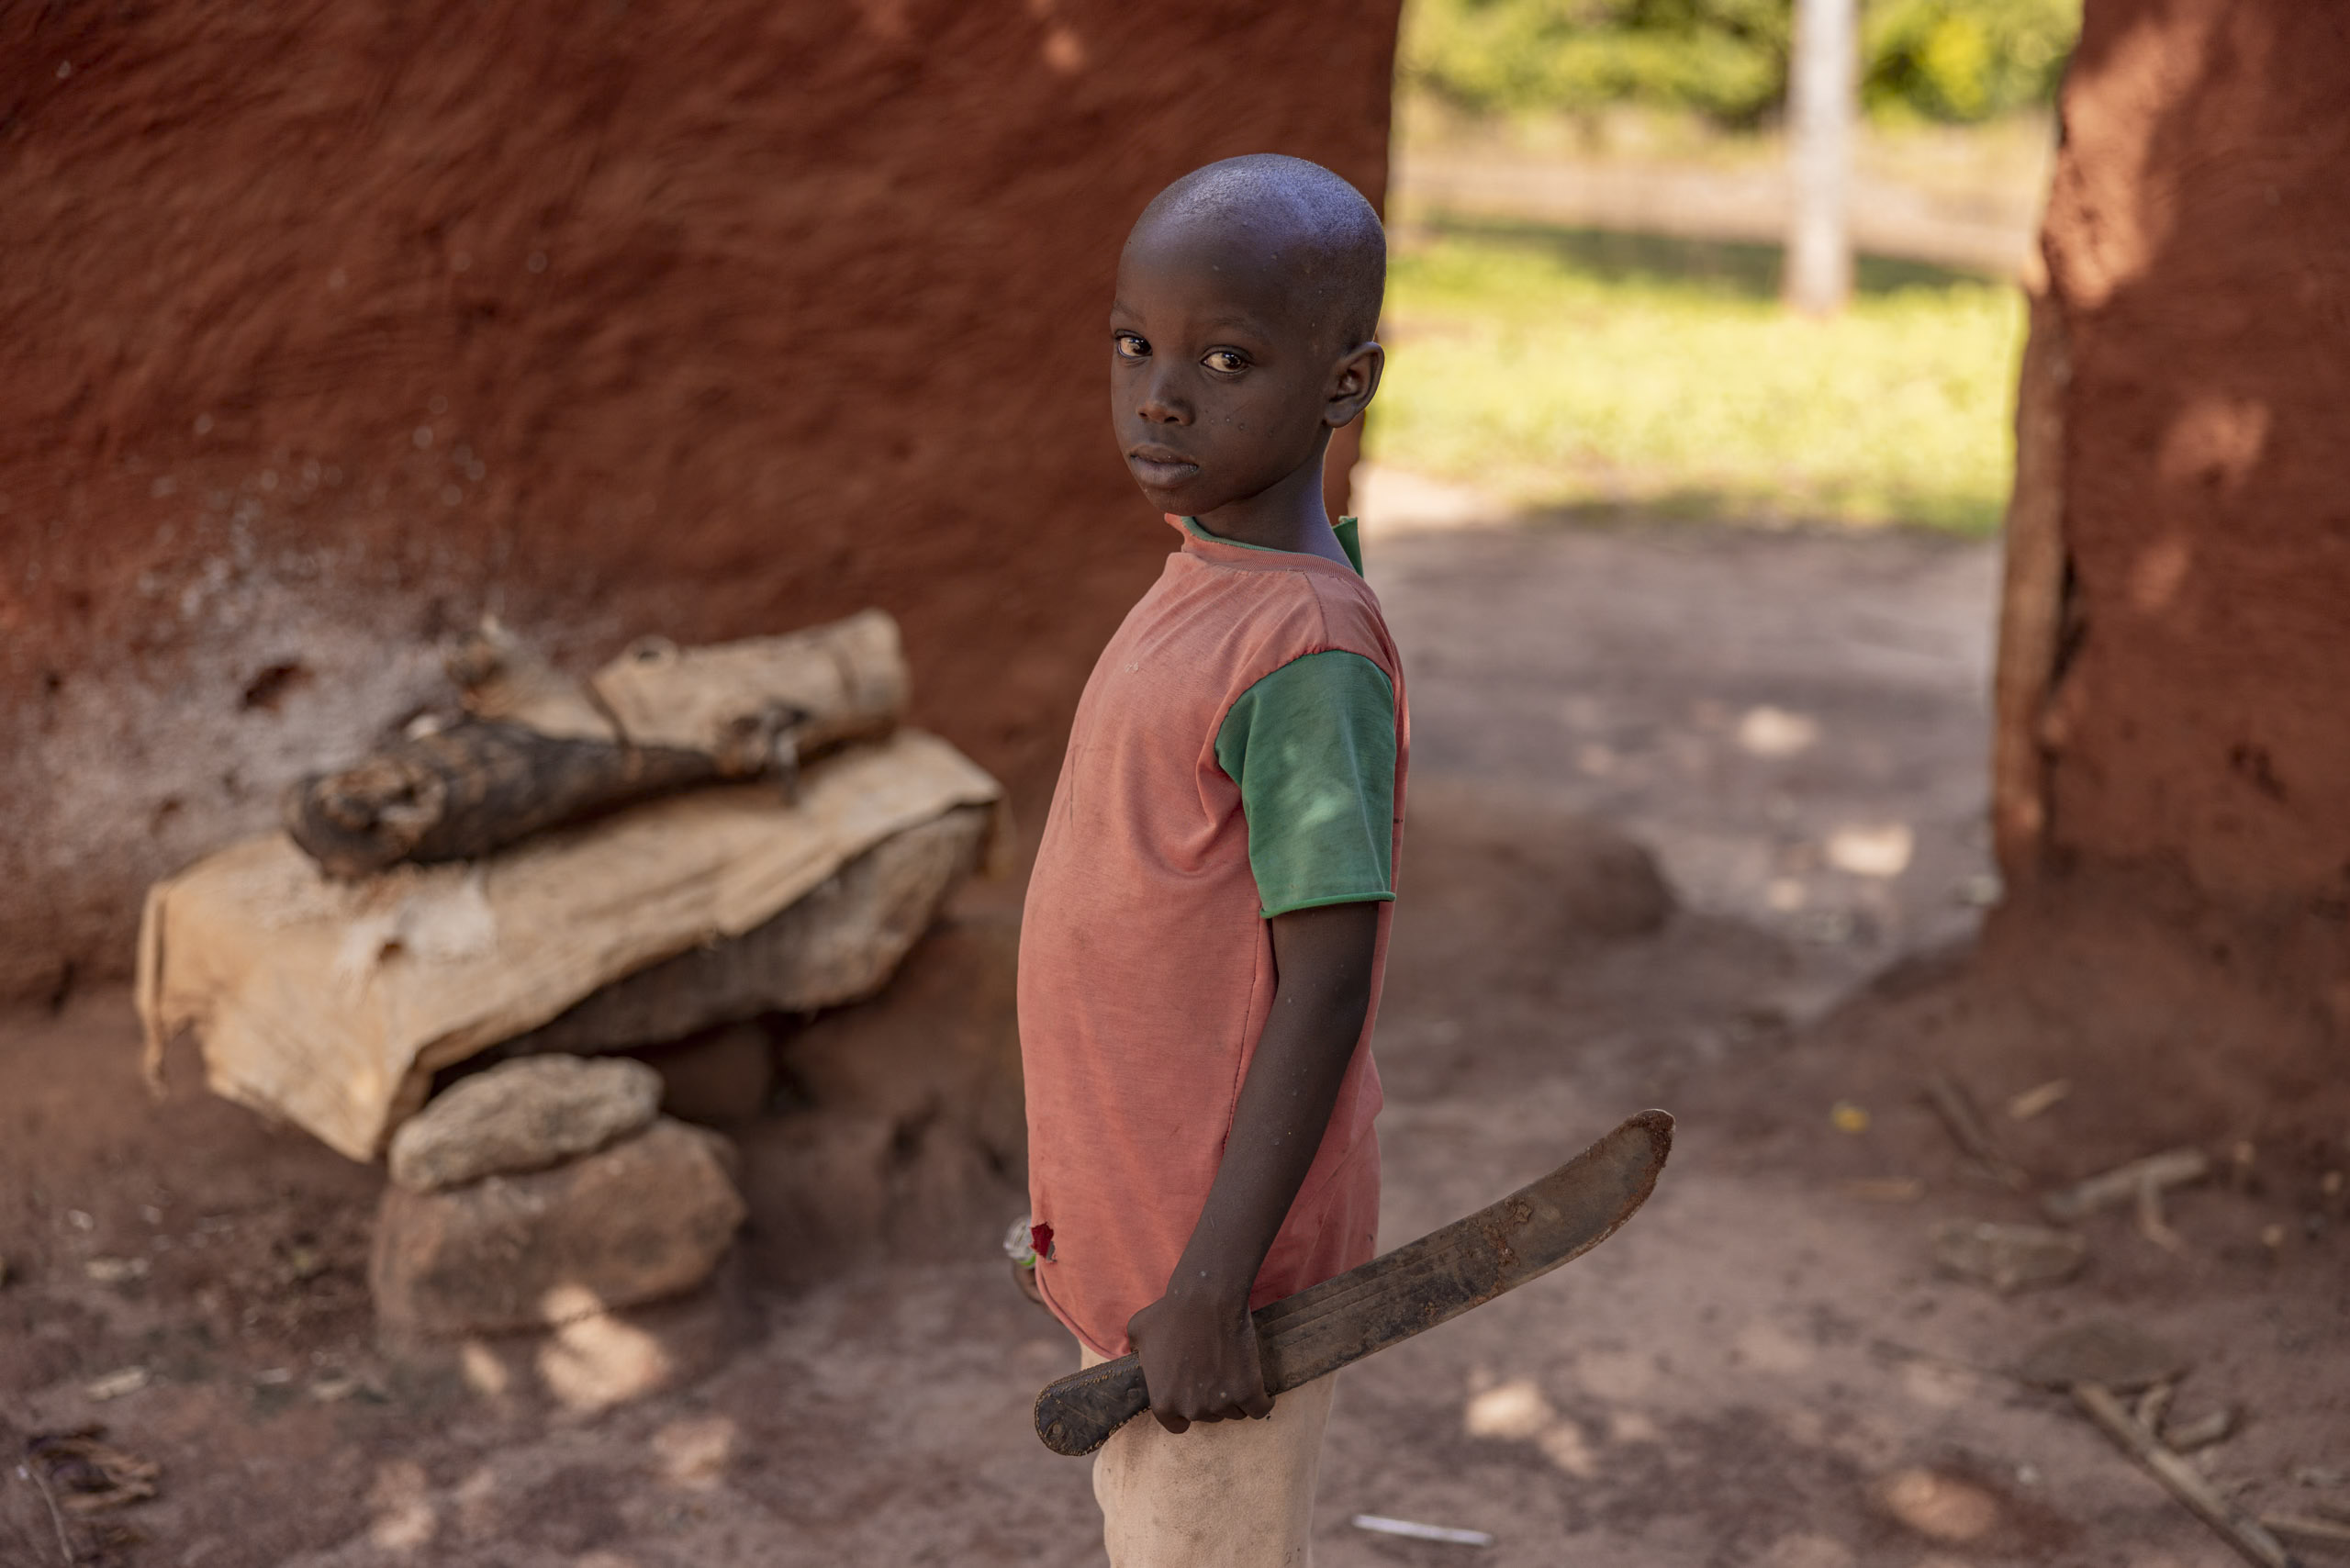 Ein kleiner Junge in einem rot-grünen Hemd hält eine Machete und steht in einem staubigen Dorf mit roten Lehmwänden und einer Holzbank im Hintergrund. © Fotografie Tomas Rodriguez